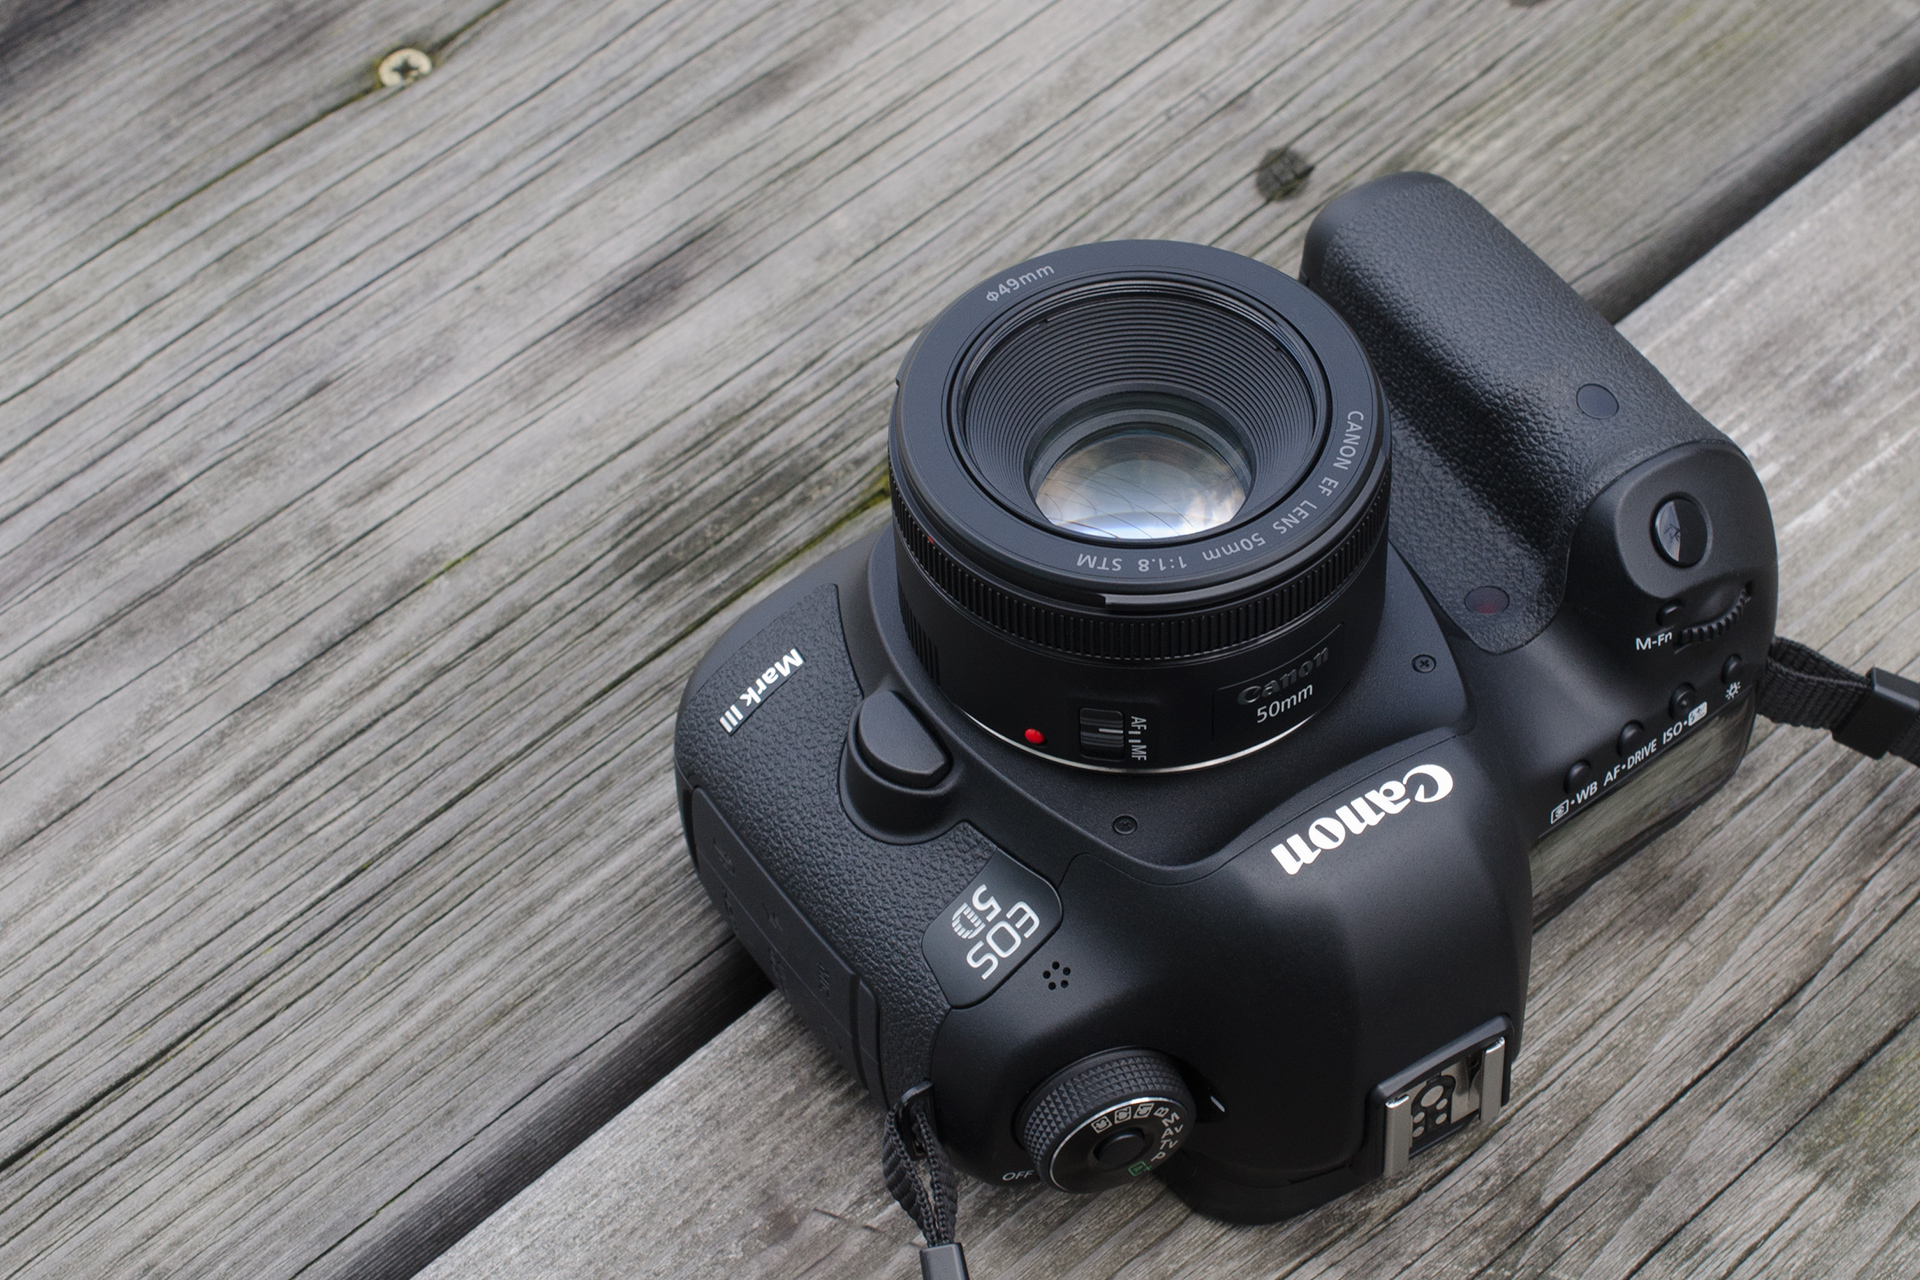 Canon EF50mm F1.8 STM レンズフィルター付き - カメラ